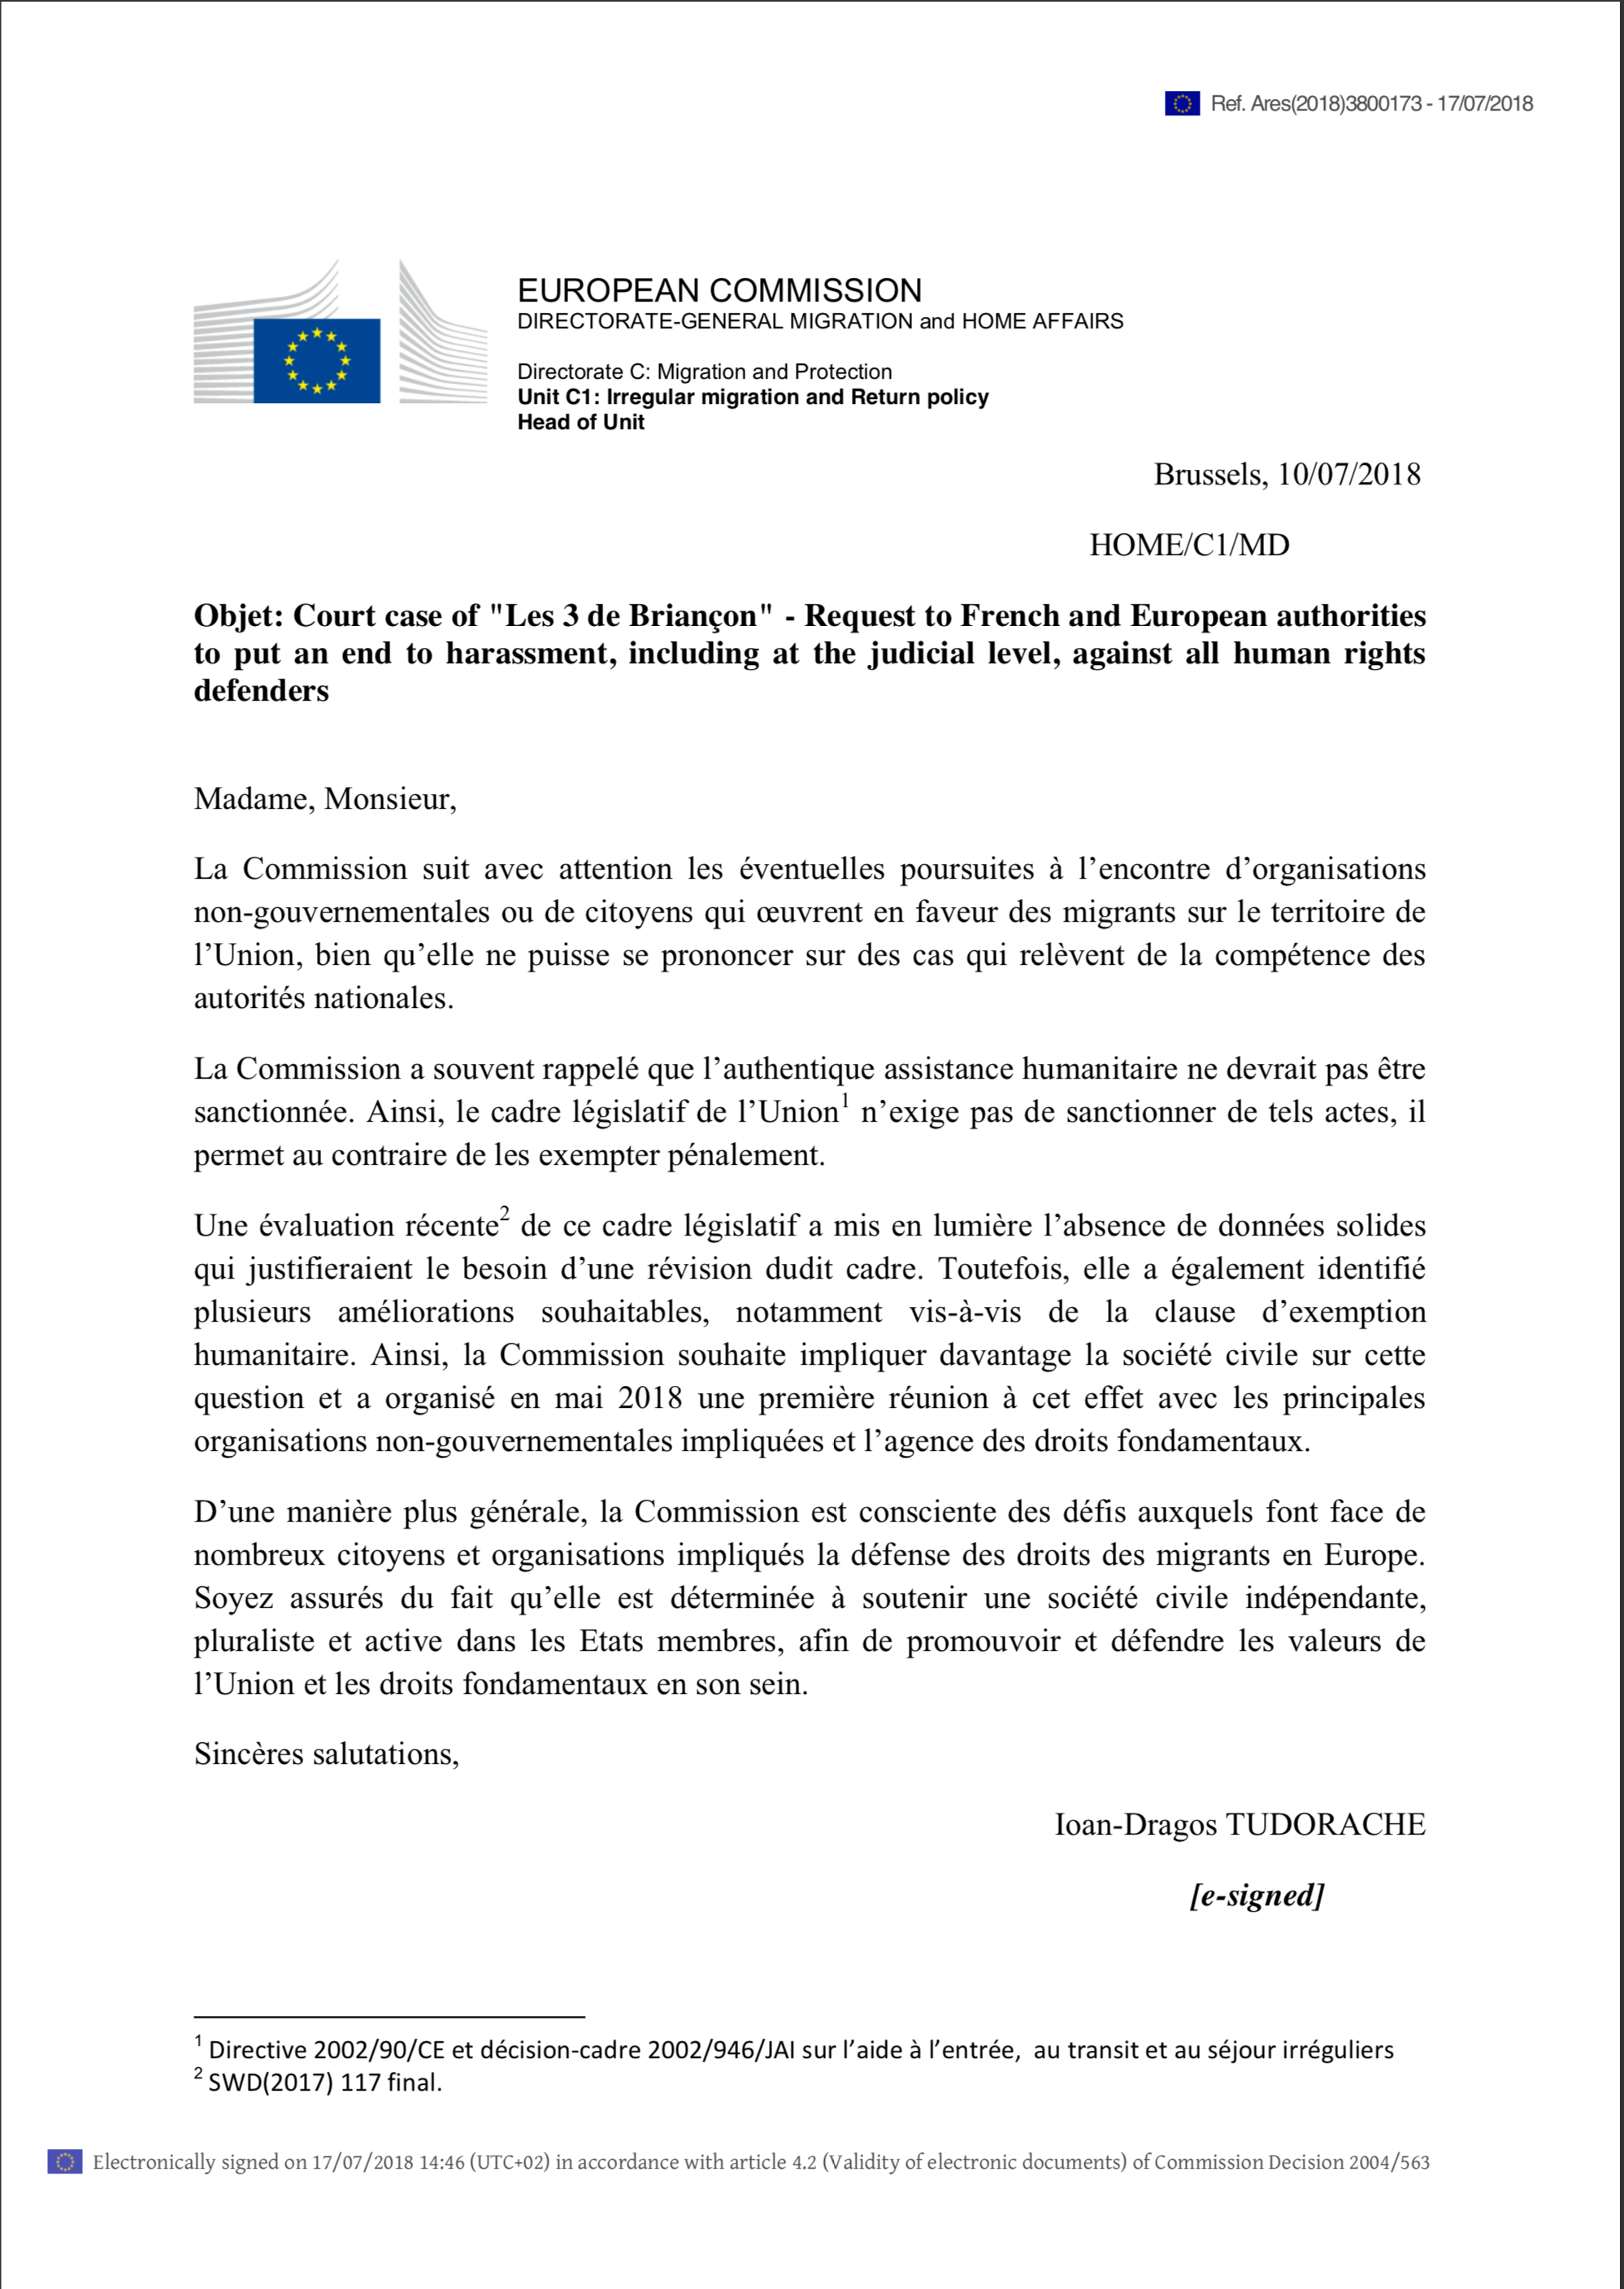 Lettre de la Commission euorpéenne